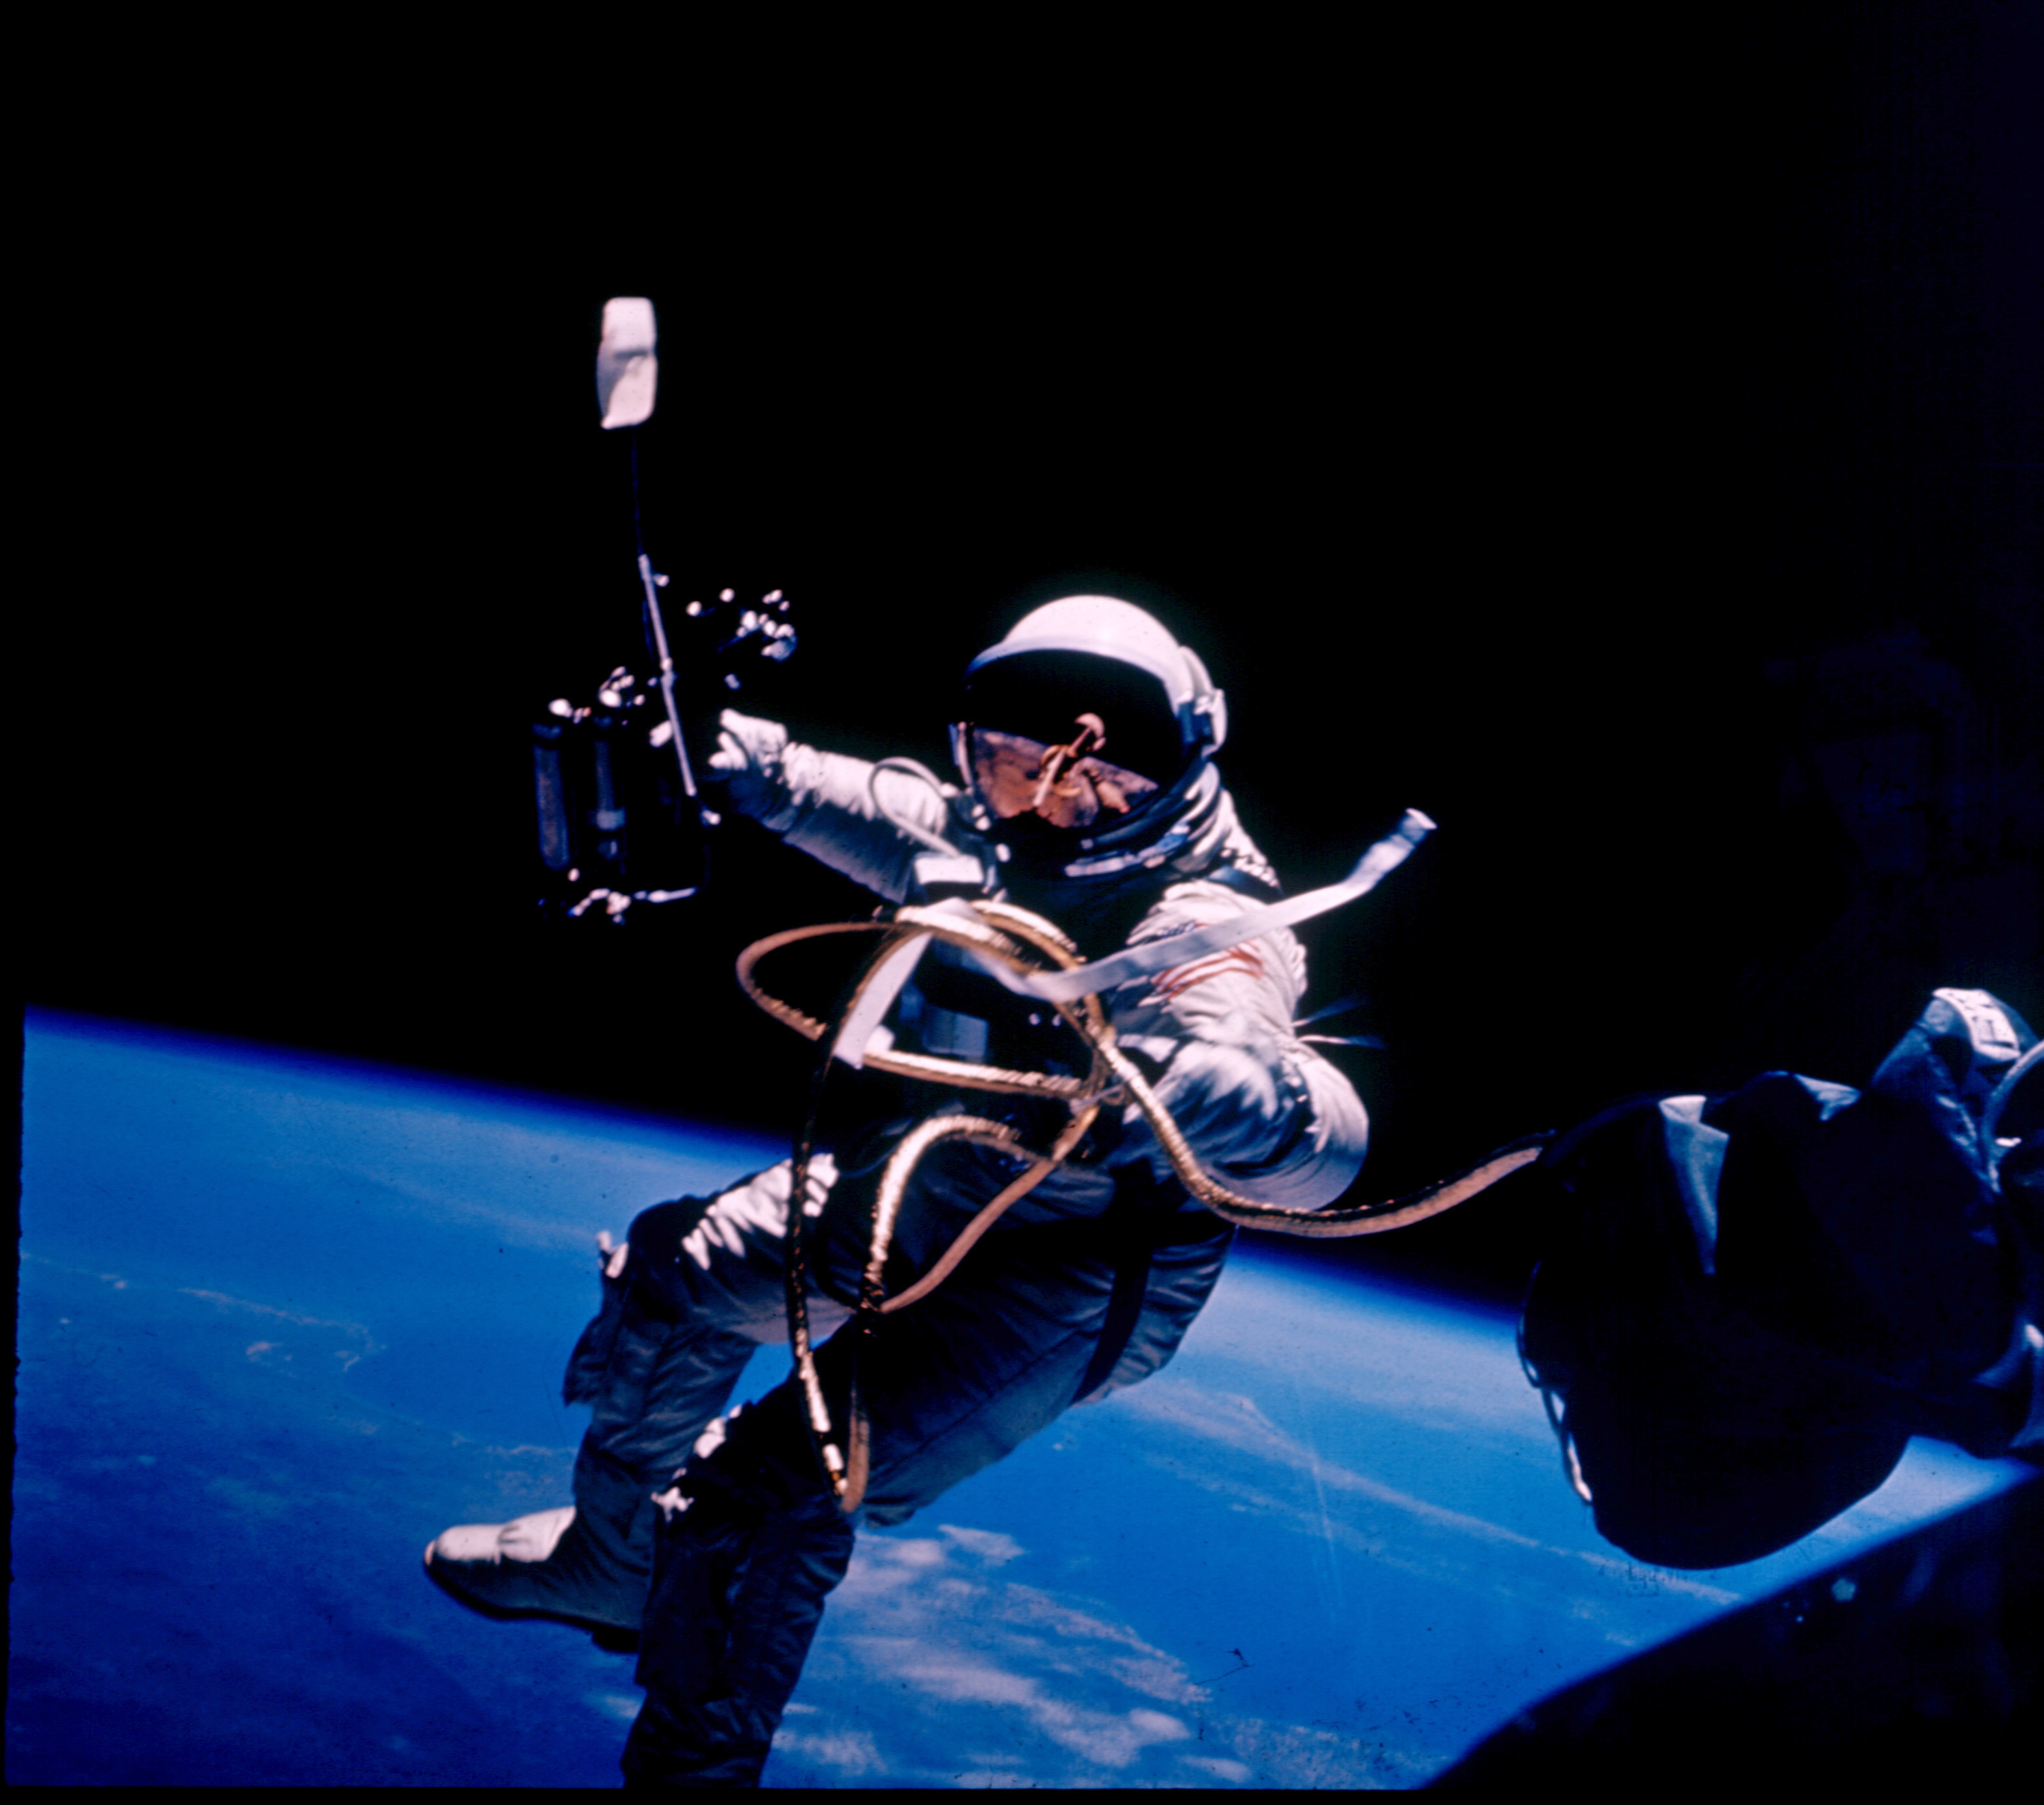 Первый астронавт в открытом космосе